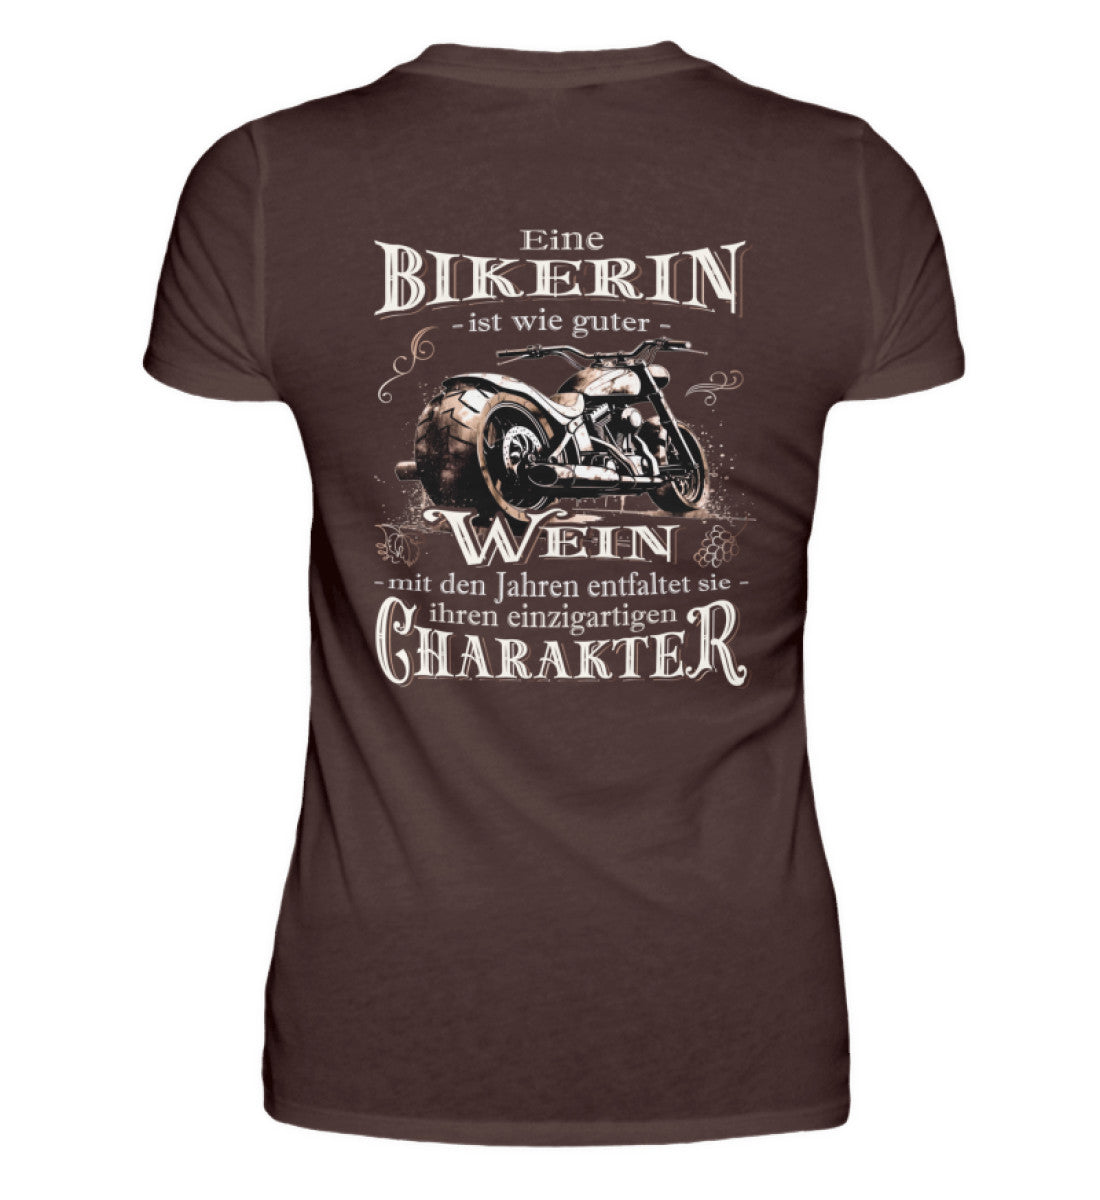 Ein Bikerin T-Shirt für Motorradfahrerinnen von Wingbikers mit dem Aufdruck, Eine Bikerin ist wie guter Wein - mit den Jahren entfaltet sie ihren einzigartigen Charakter - mit Back Print, in braun.